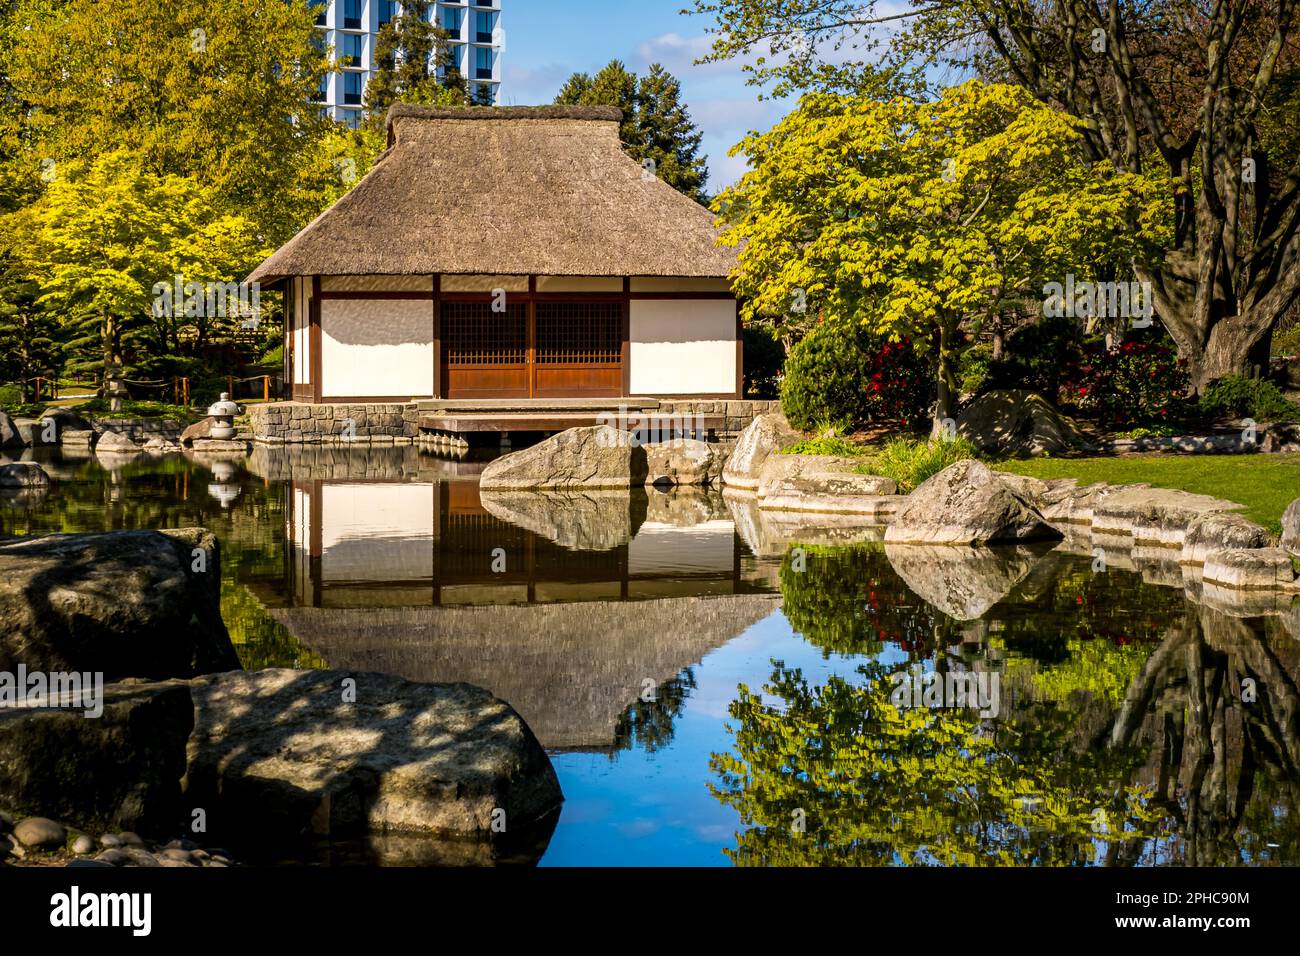 Le pittoresque salon de thé japonais au soleil du matin, entouré de rochers pittoresques et de la nature se reflétant dans l'eau d'un étang, un cadre paisible. Banque D'Images